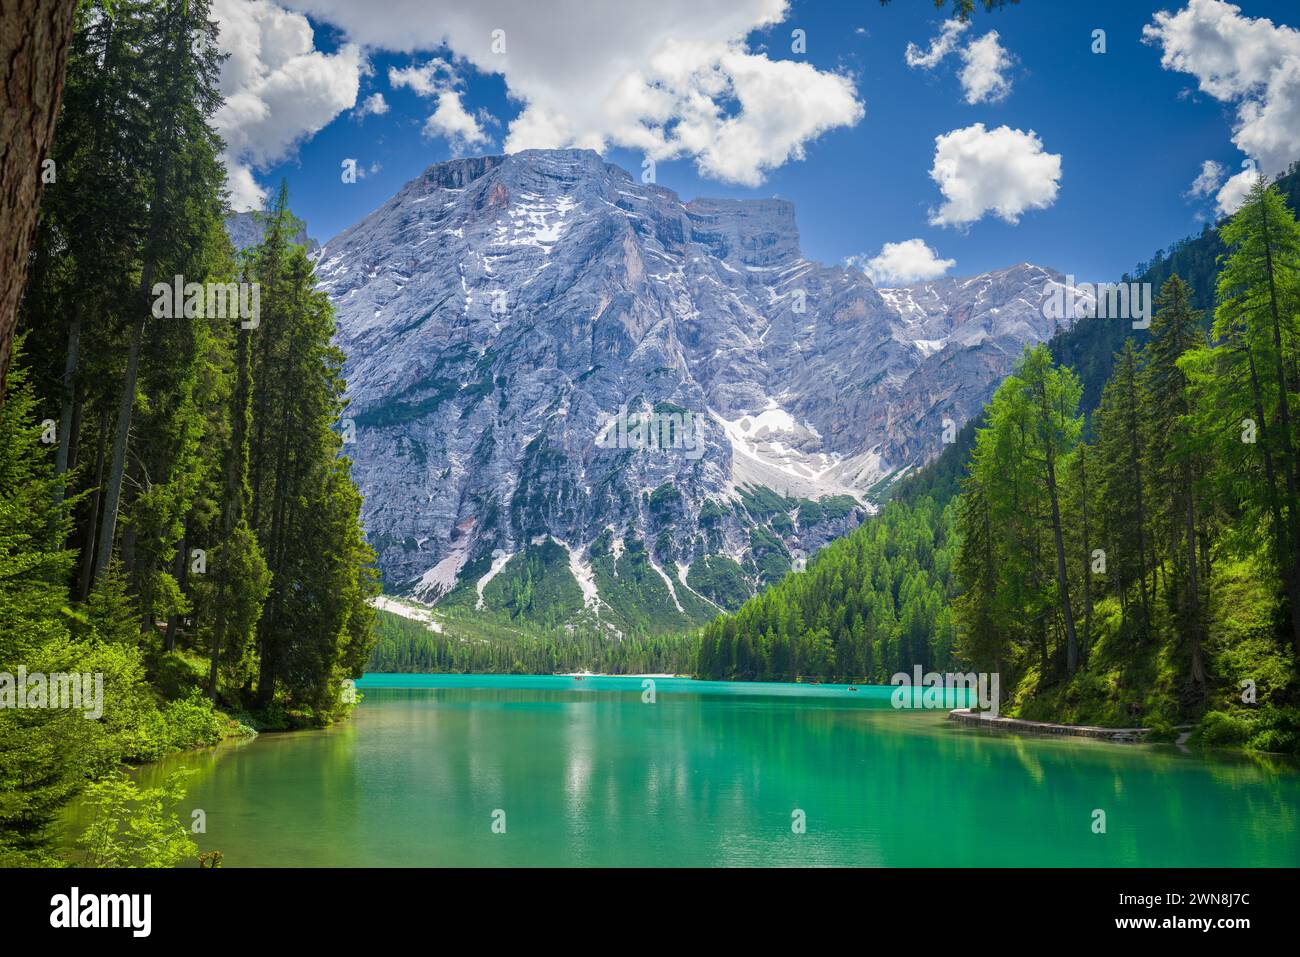 Pragser Wildsee (Lago di Braies) nelle Dolomiti, Italia. Vista sul lago, circondato da conifere con un massiccio montuoso sullo sfondo Foto Stock